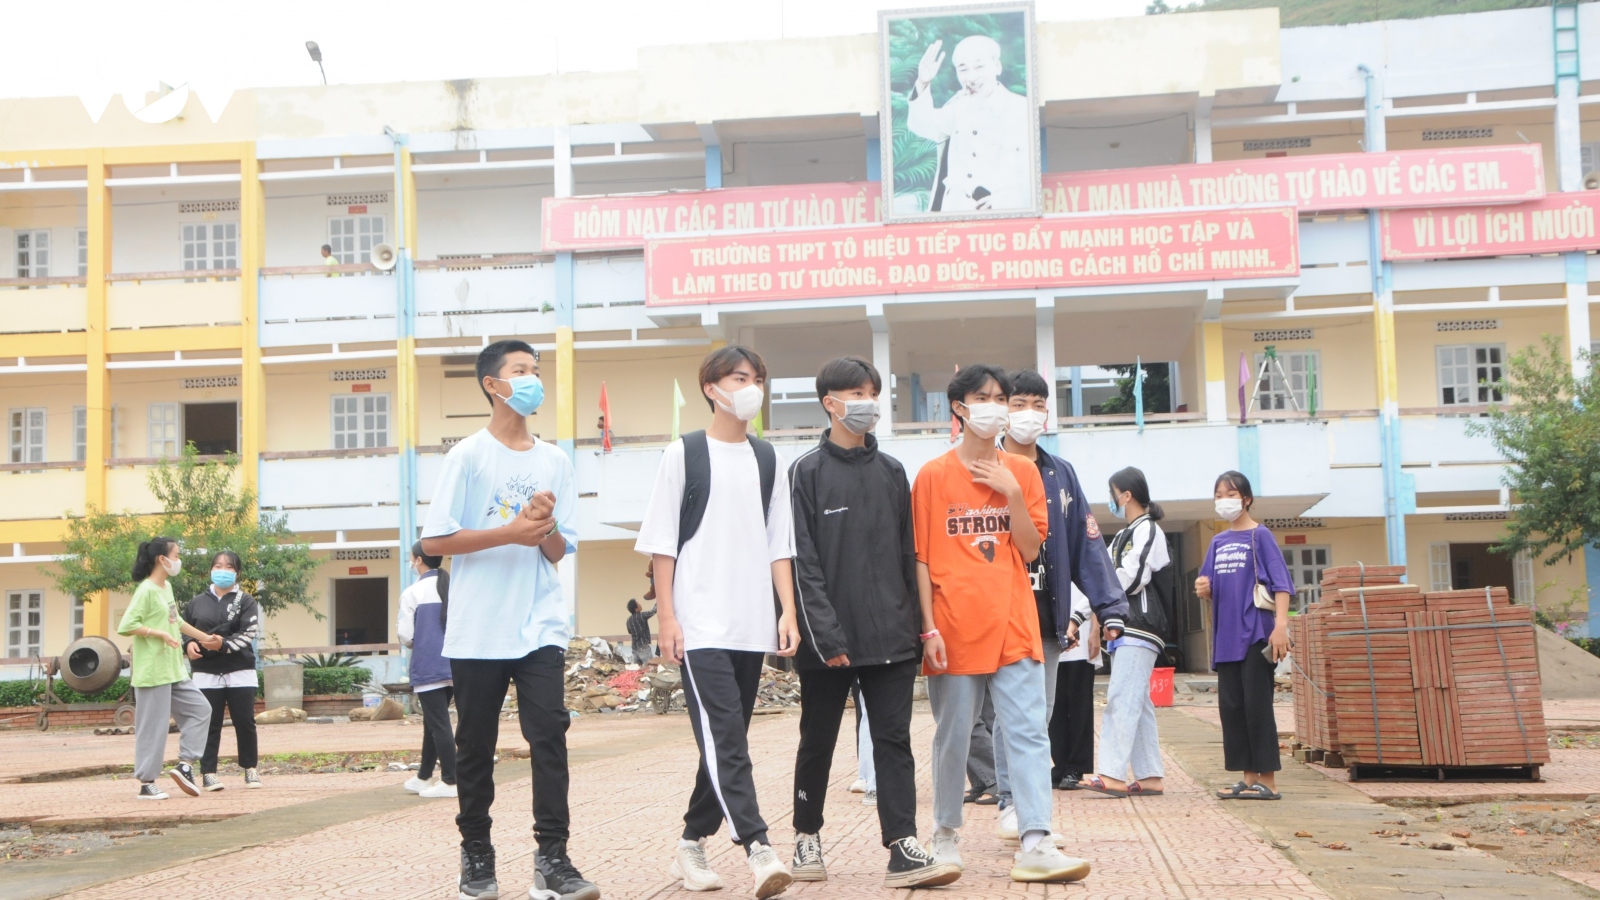 
        Hơn 300.000 học sinh tỉnh Sơn La hôm nay tựu trường
                              